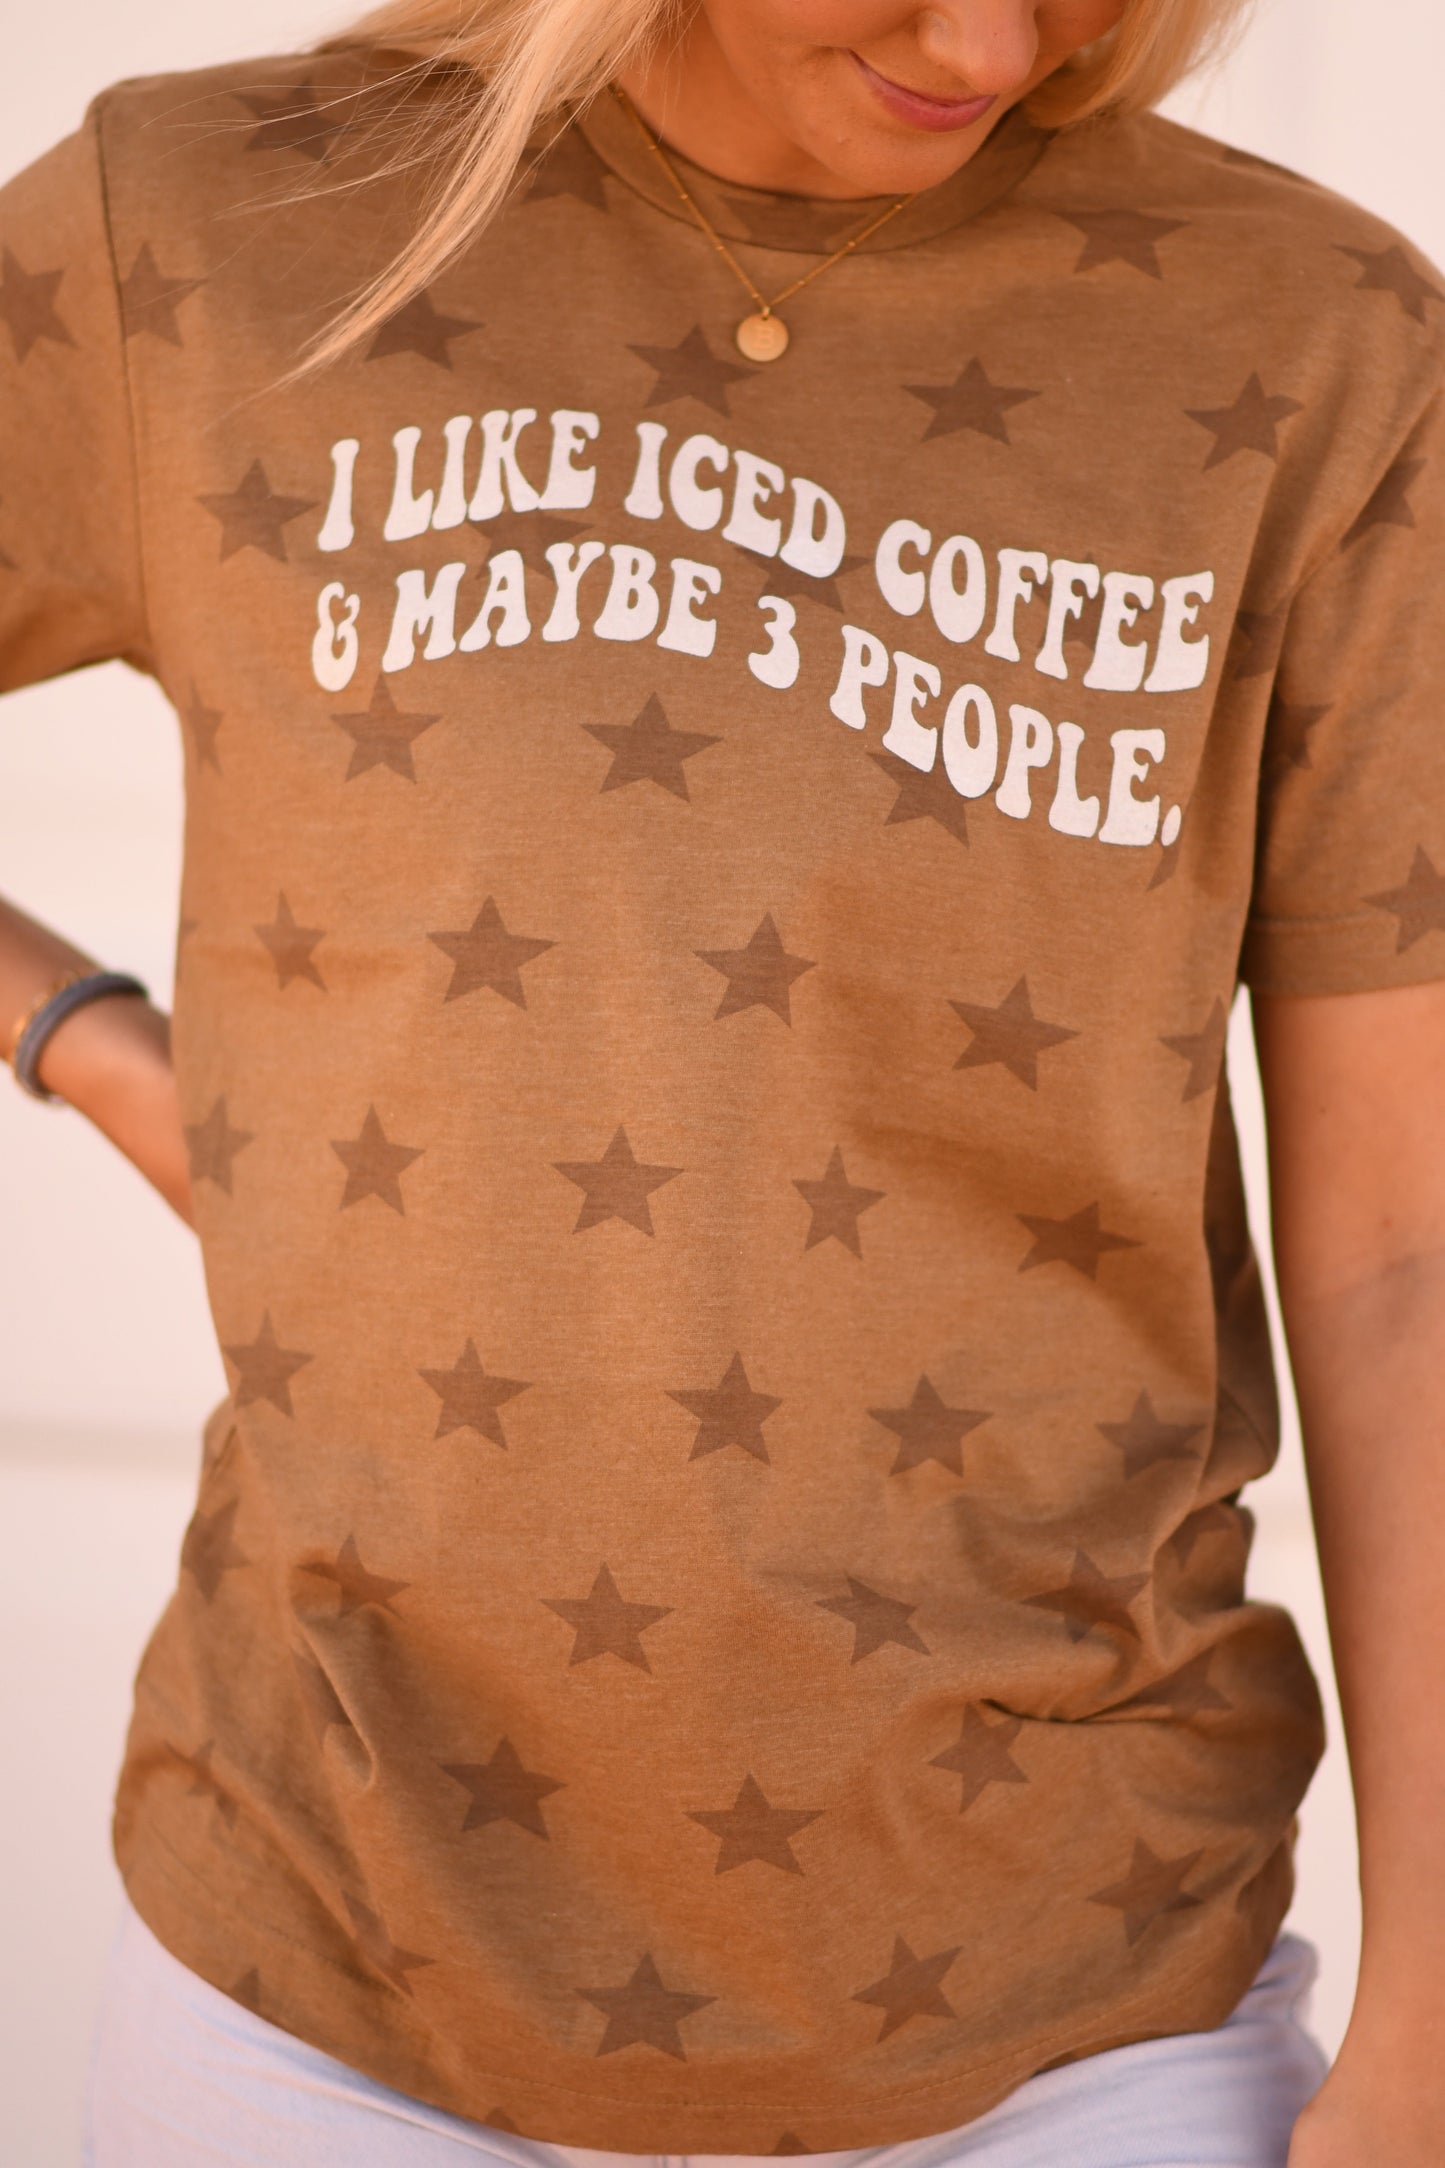 I like iced coffee tee